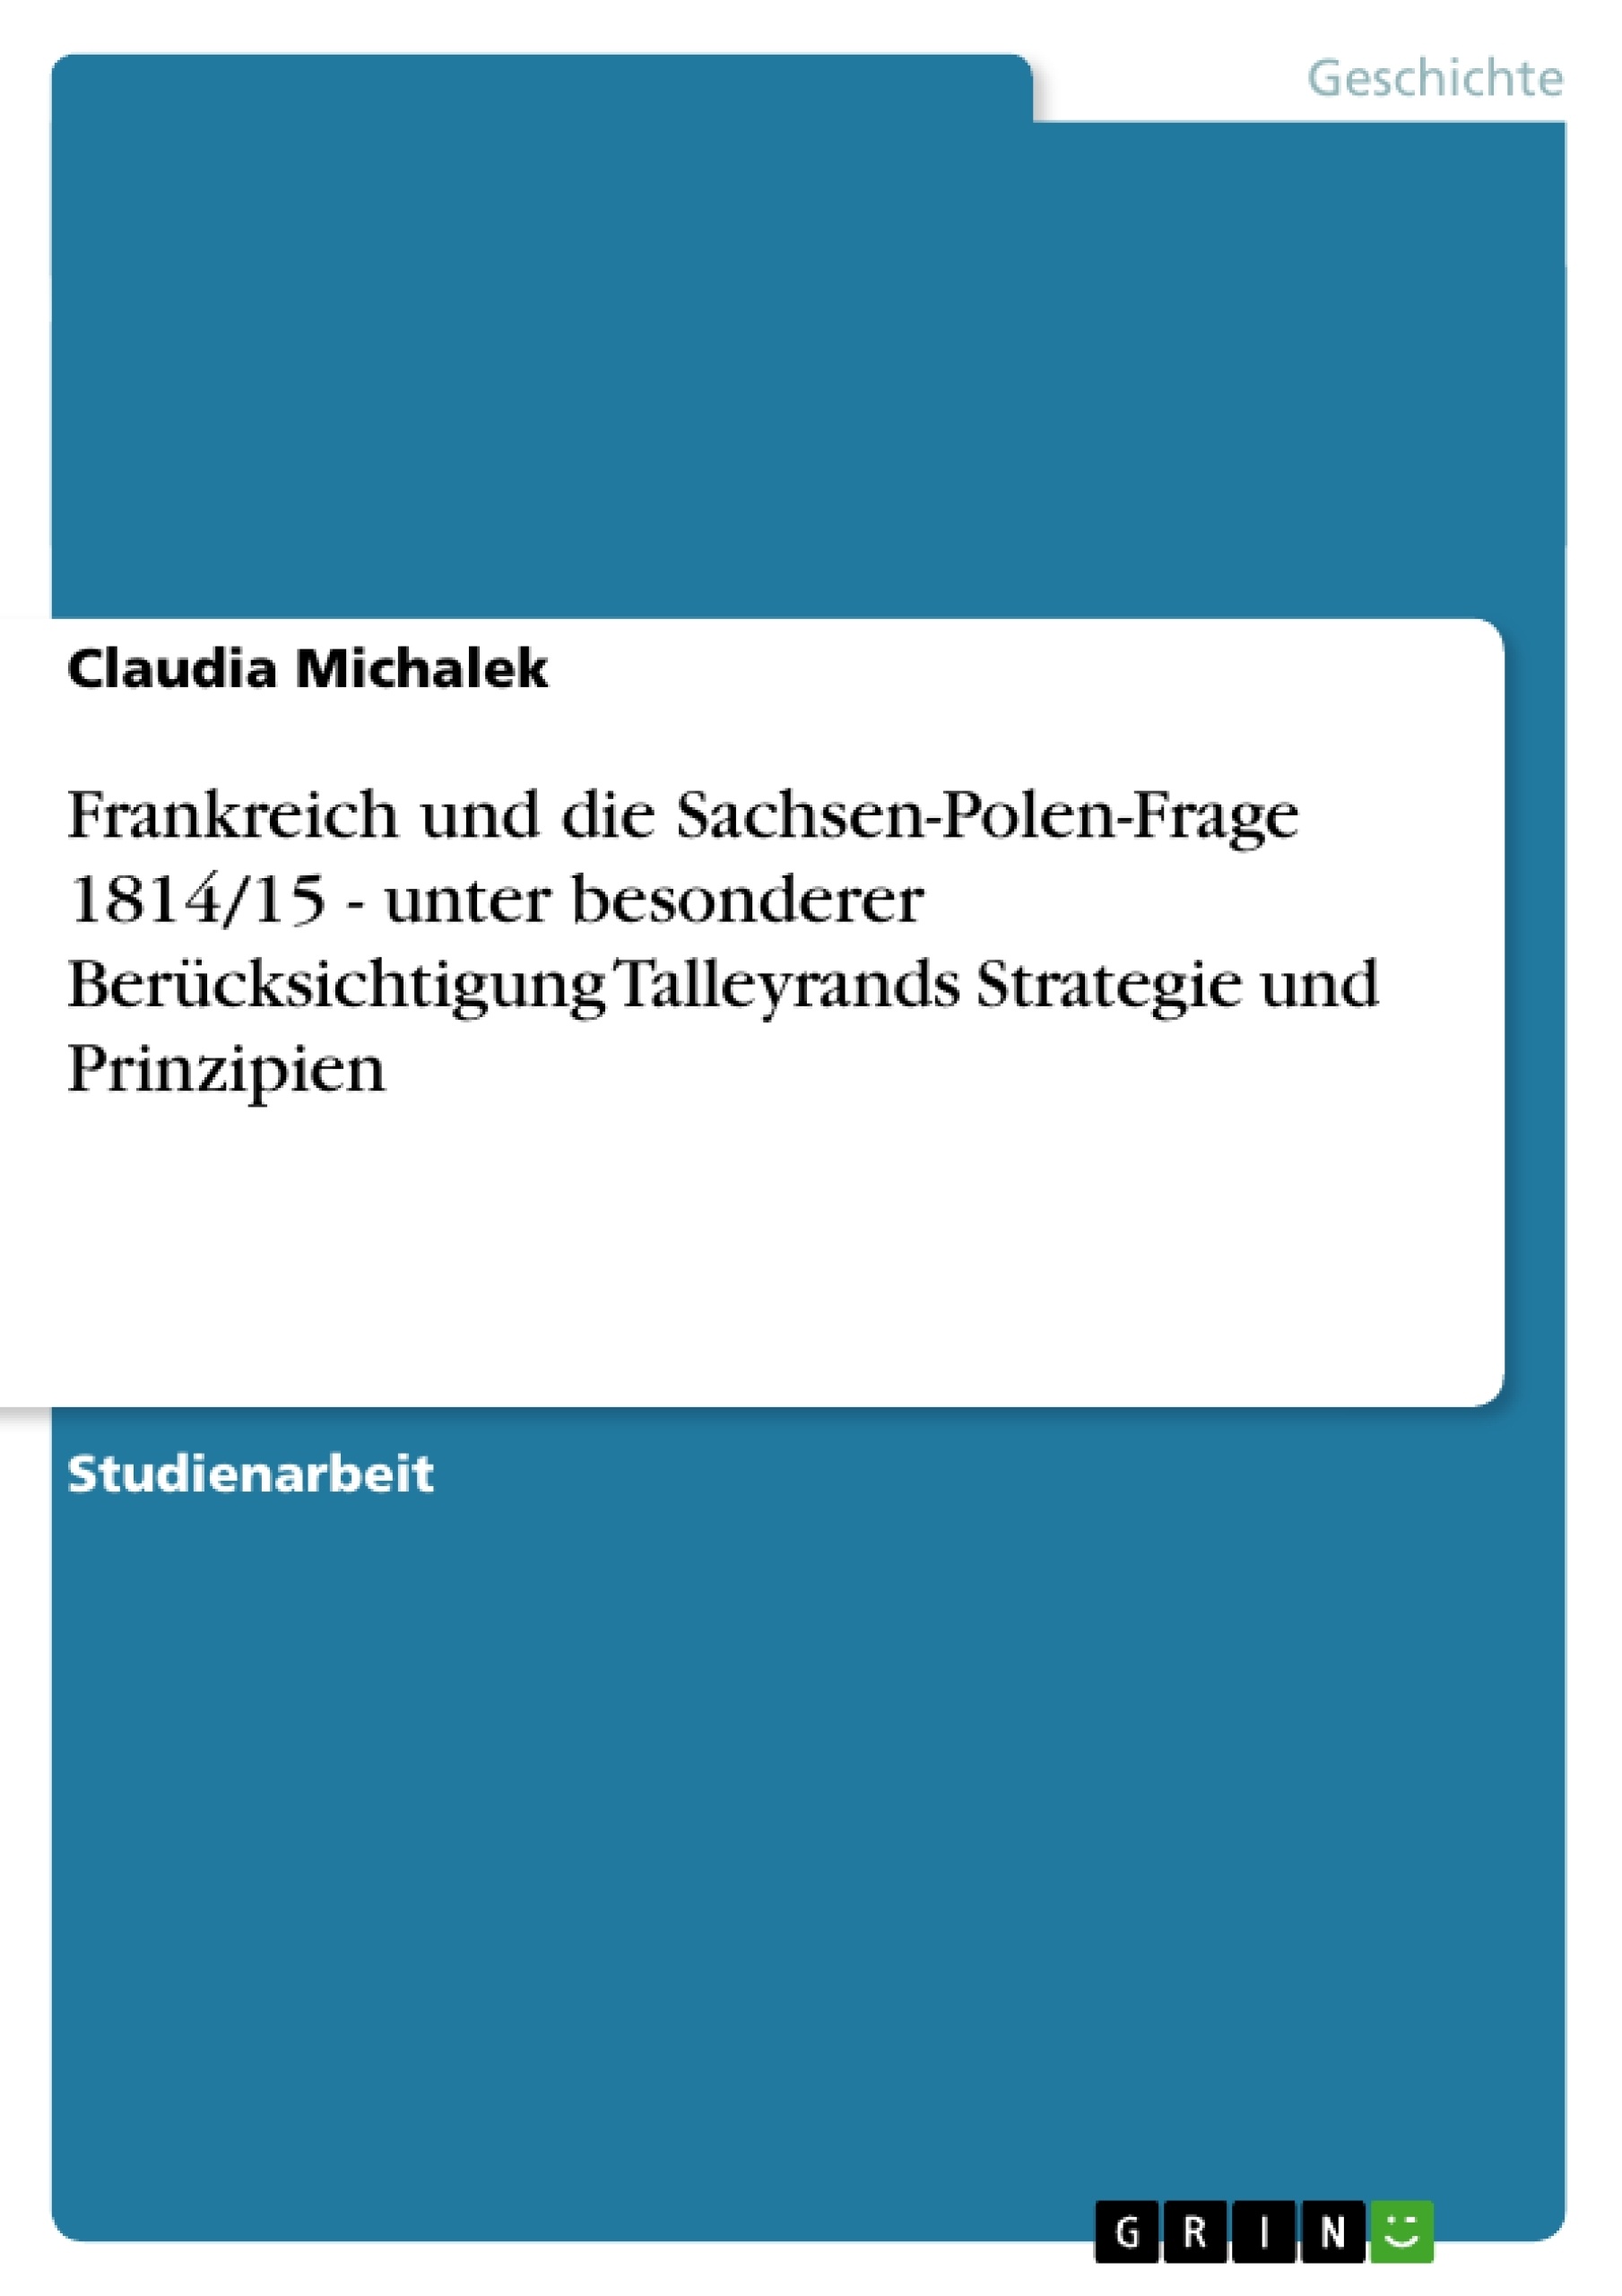 Título: Frankreich und die Sachsen-Polen-Frage 1814/15 - unter besonderer Berücksichtigung Talleyrands Strategie und Prinzipien